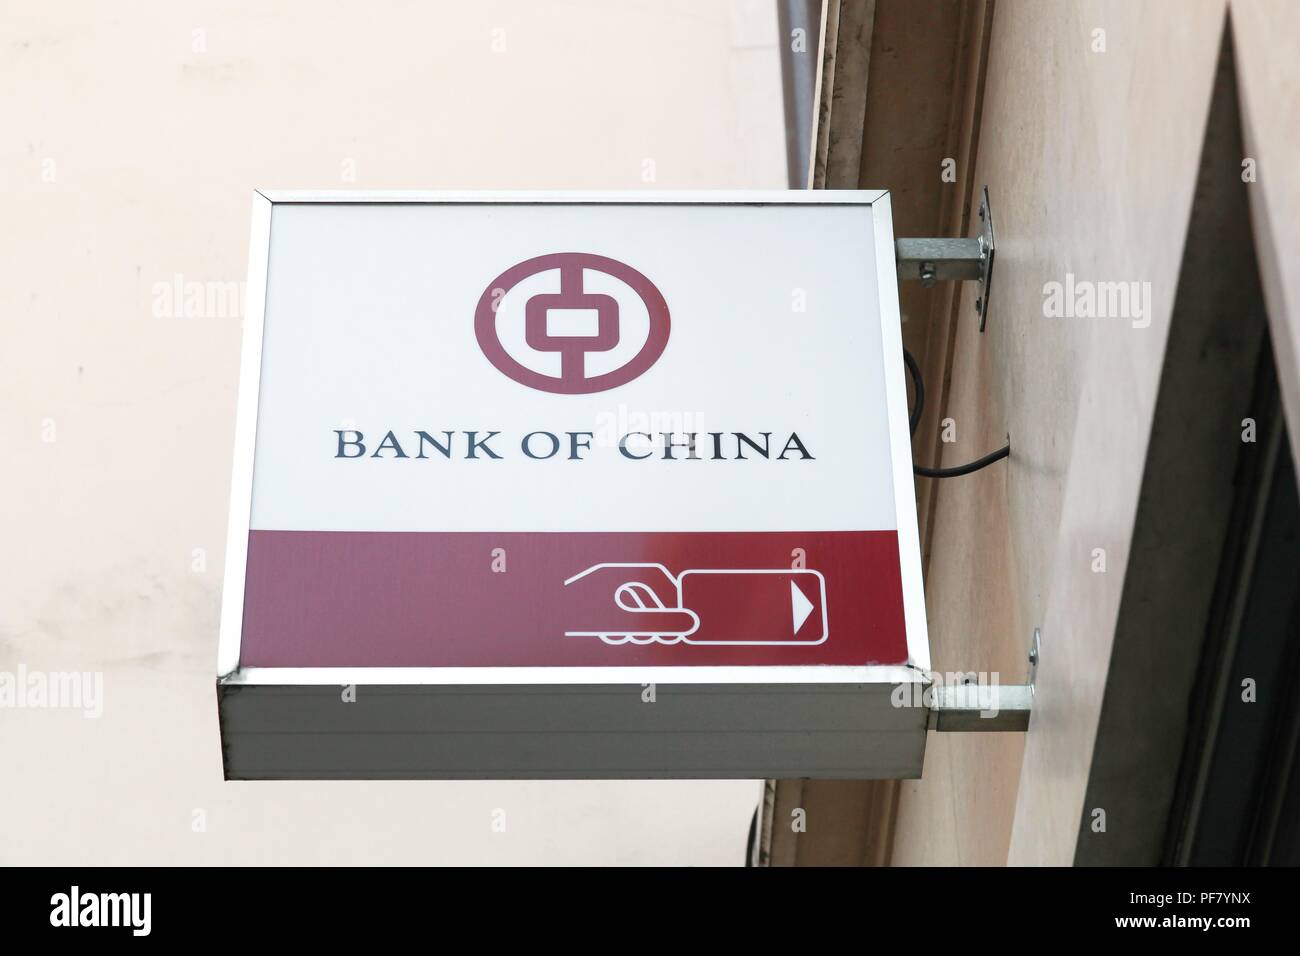 Lyon, Francia - 19 de julio de 2018: el logotipo del Banco de China en una pared. El Banco de China es uno de los cuatro mayores bancos comerciales de propiedad estatal en China Foto de stock